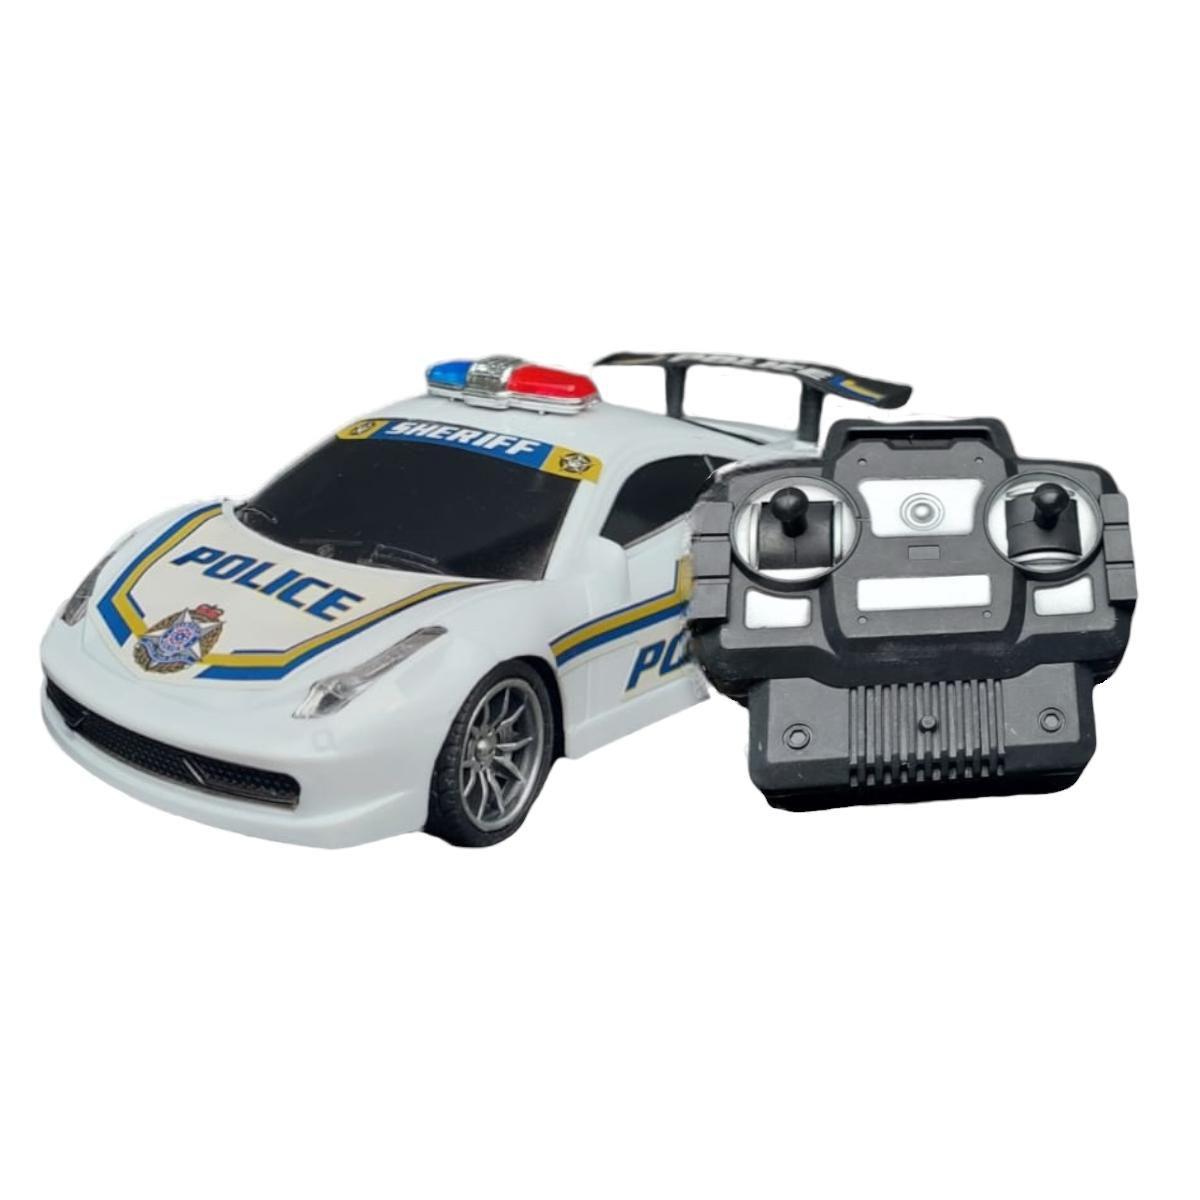 Brinquedo Infantil Carrinho De Policia Controle Remoto Luz carrinho  controle remoto viatura policia milita a pilhas cores sortidas